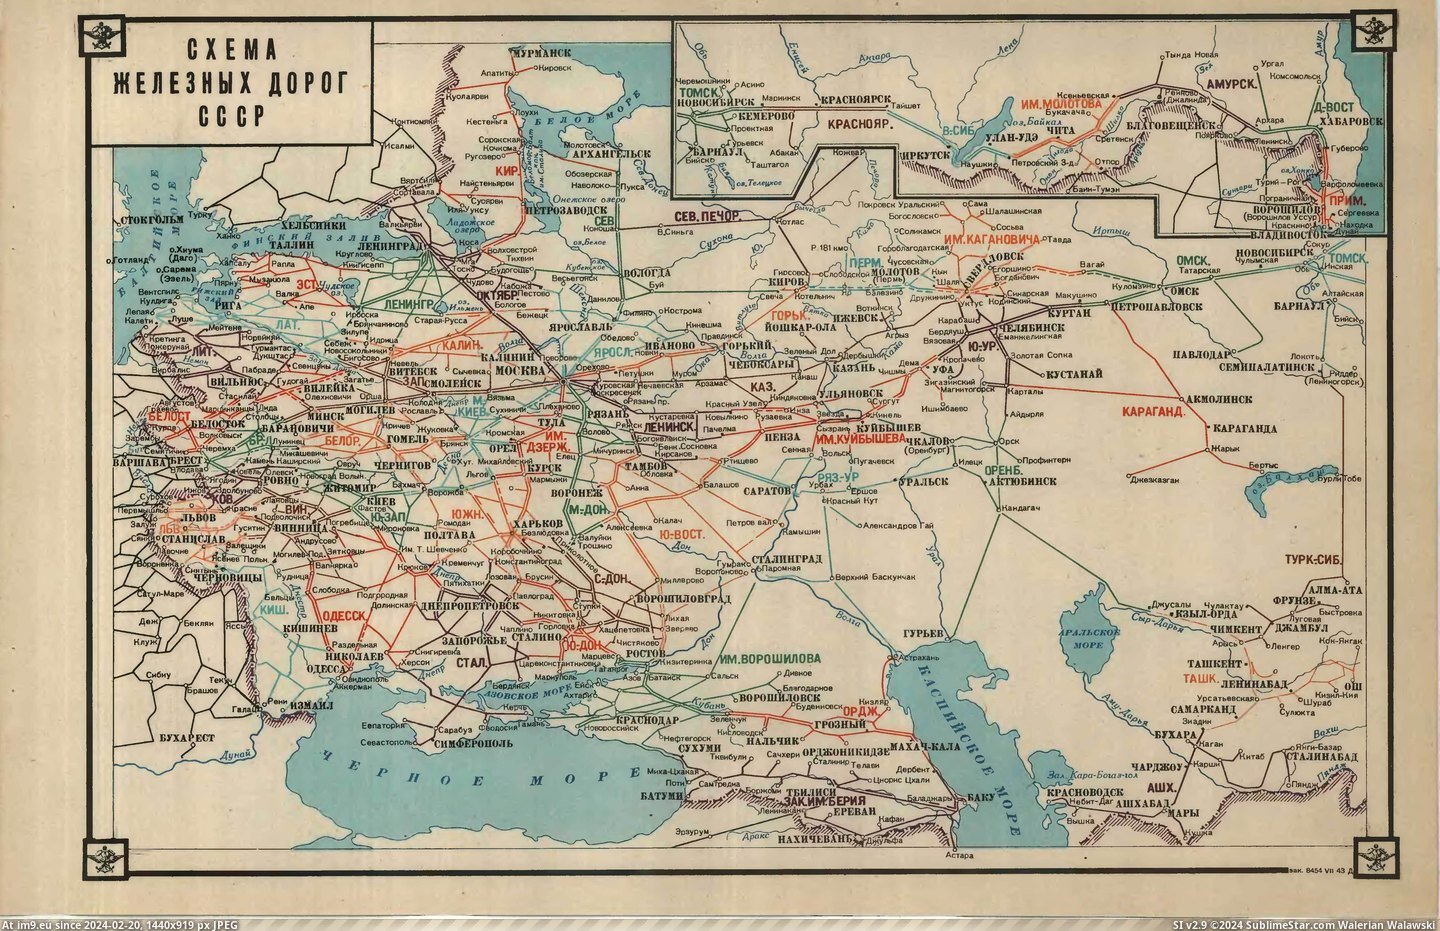 #Album #Military #Atlas #Railroad #Network [Mapporn] military atlas of the USSR railroad and waterway network in 1943 (album in comments) [5269x3375] Pic. (Obraz z album My r/MAPS favs))